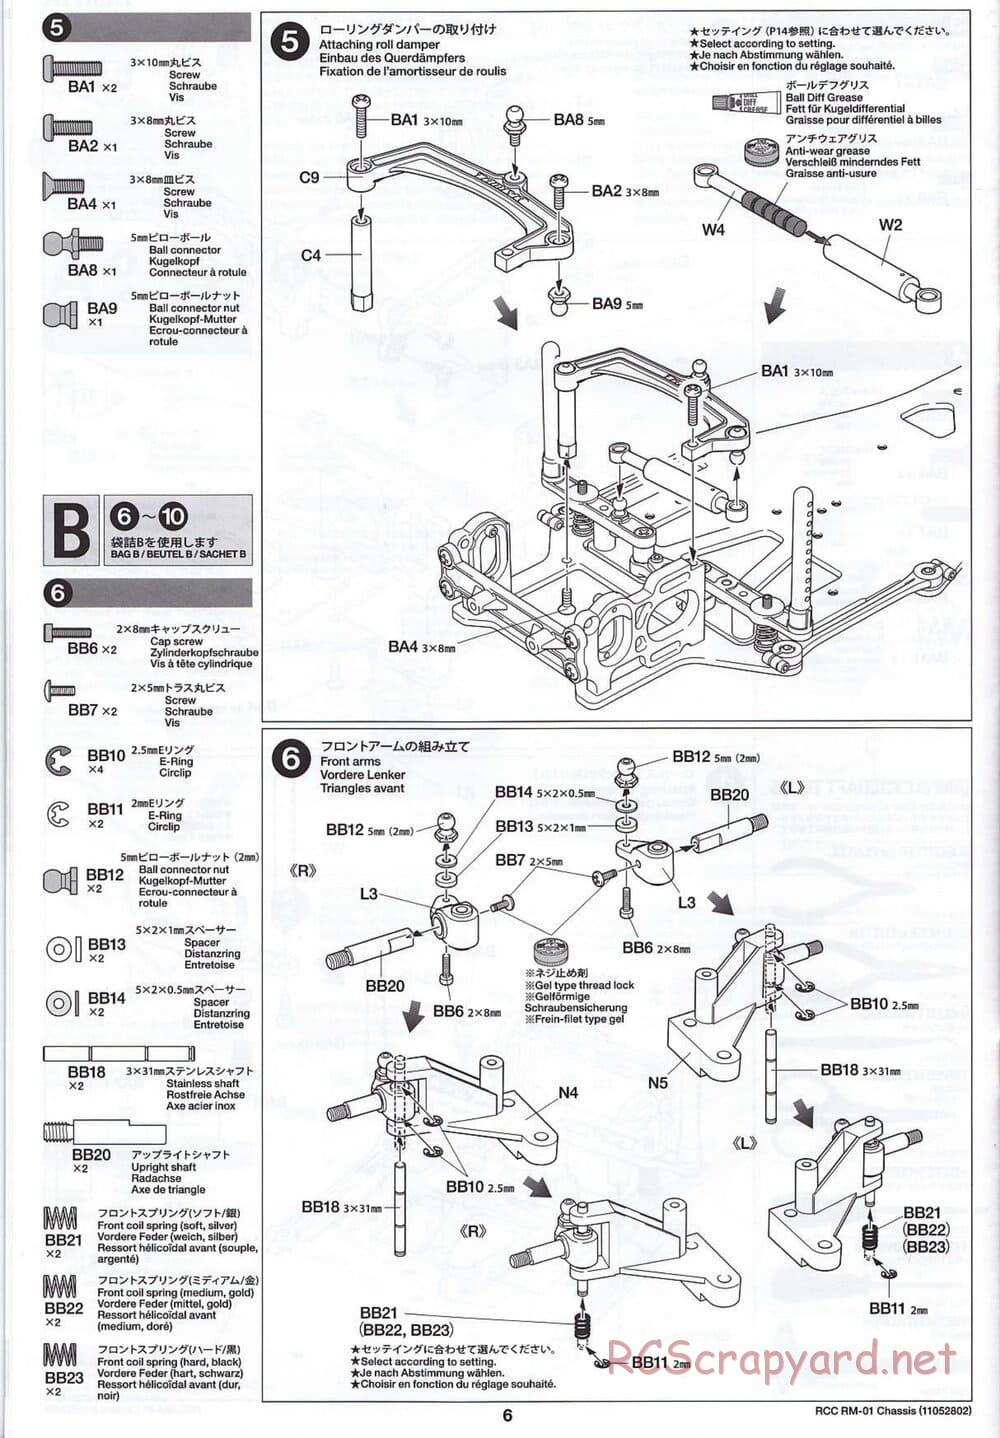 Tamiya - TA04-SS Chassis - Manual - Page 6